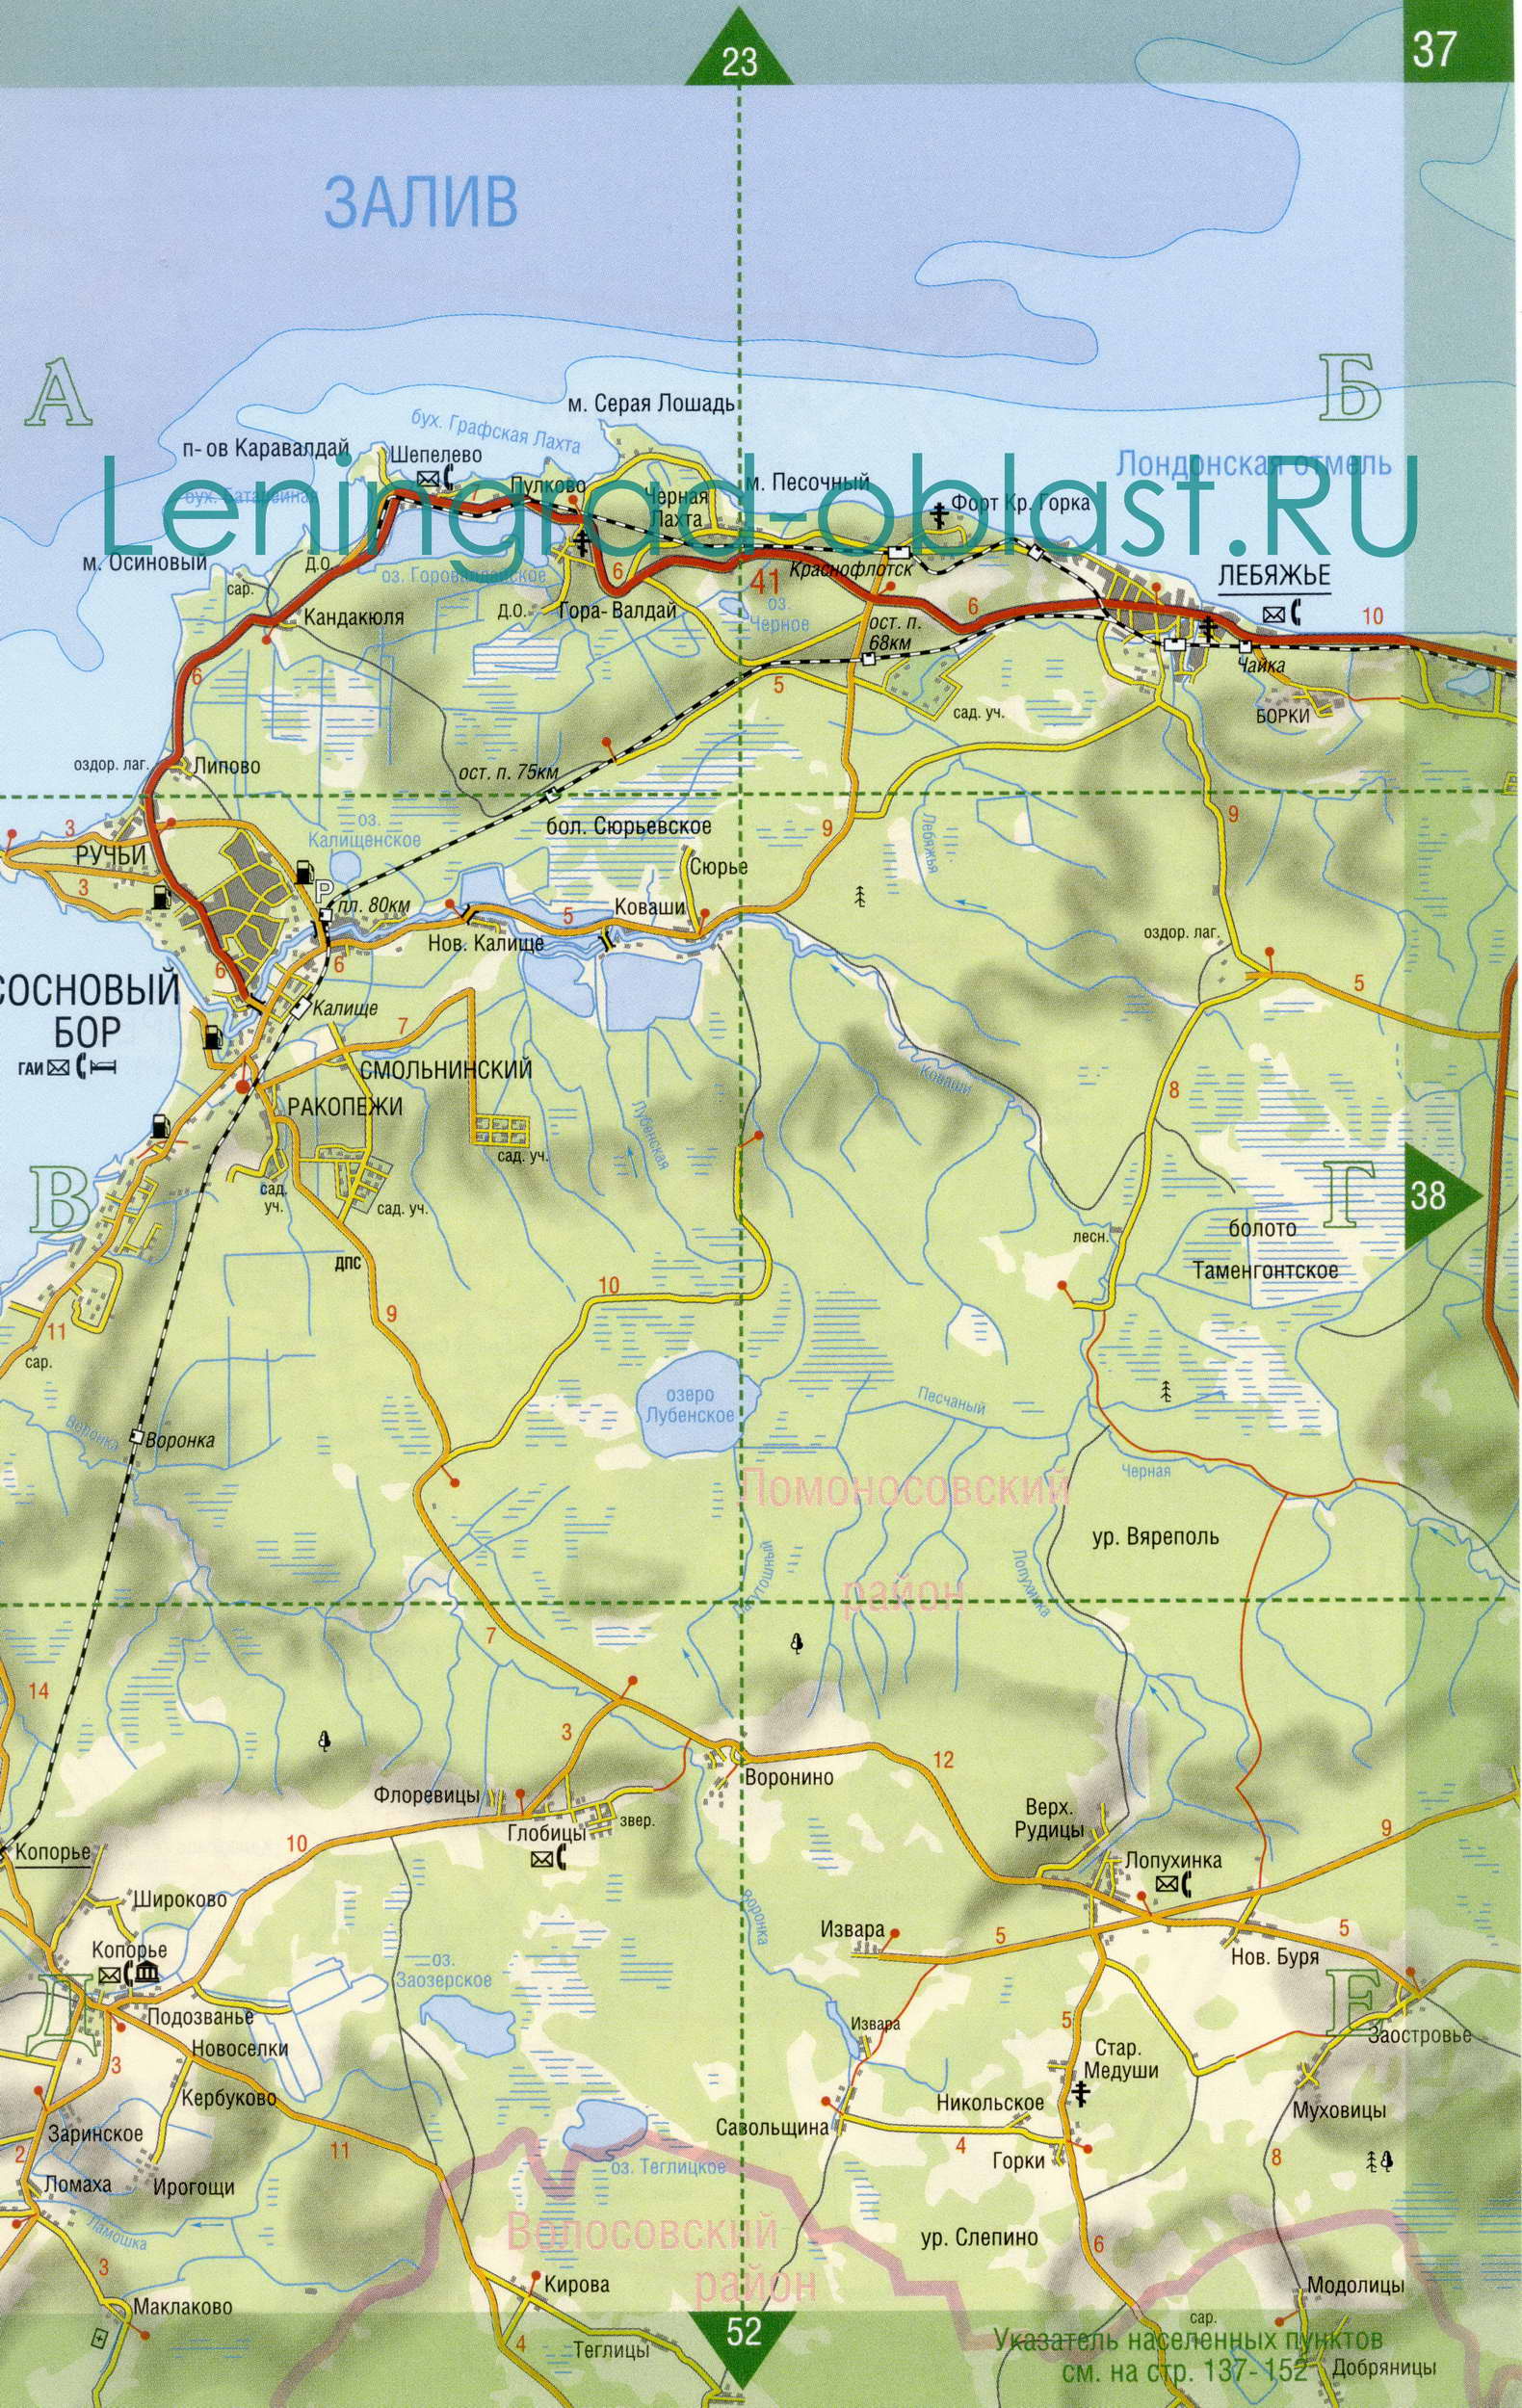 Карта Сосновоборского округа Ленобласти. Подробная карта Ленинградской области - Сосновоборский округ, A0 - 